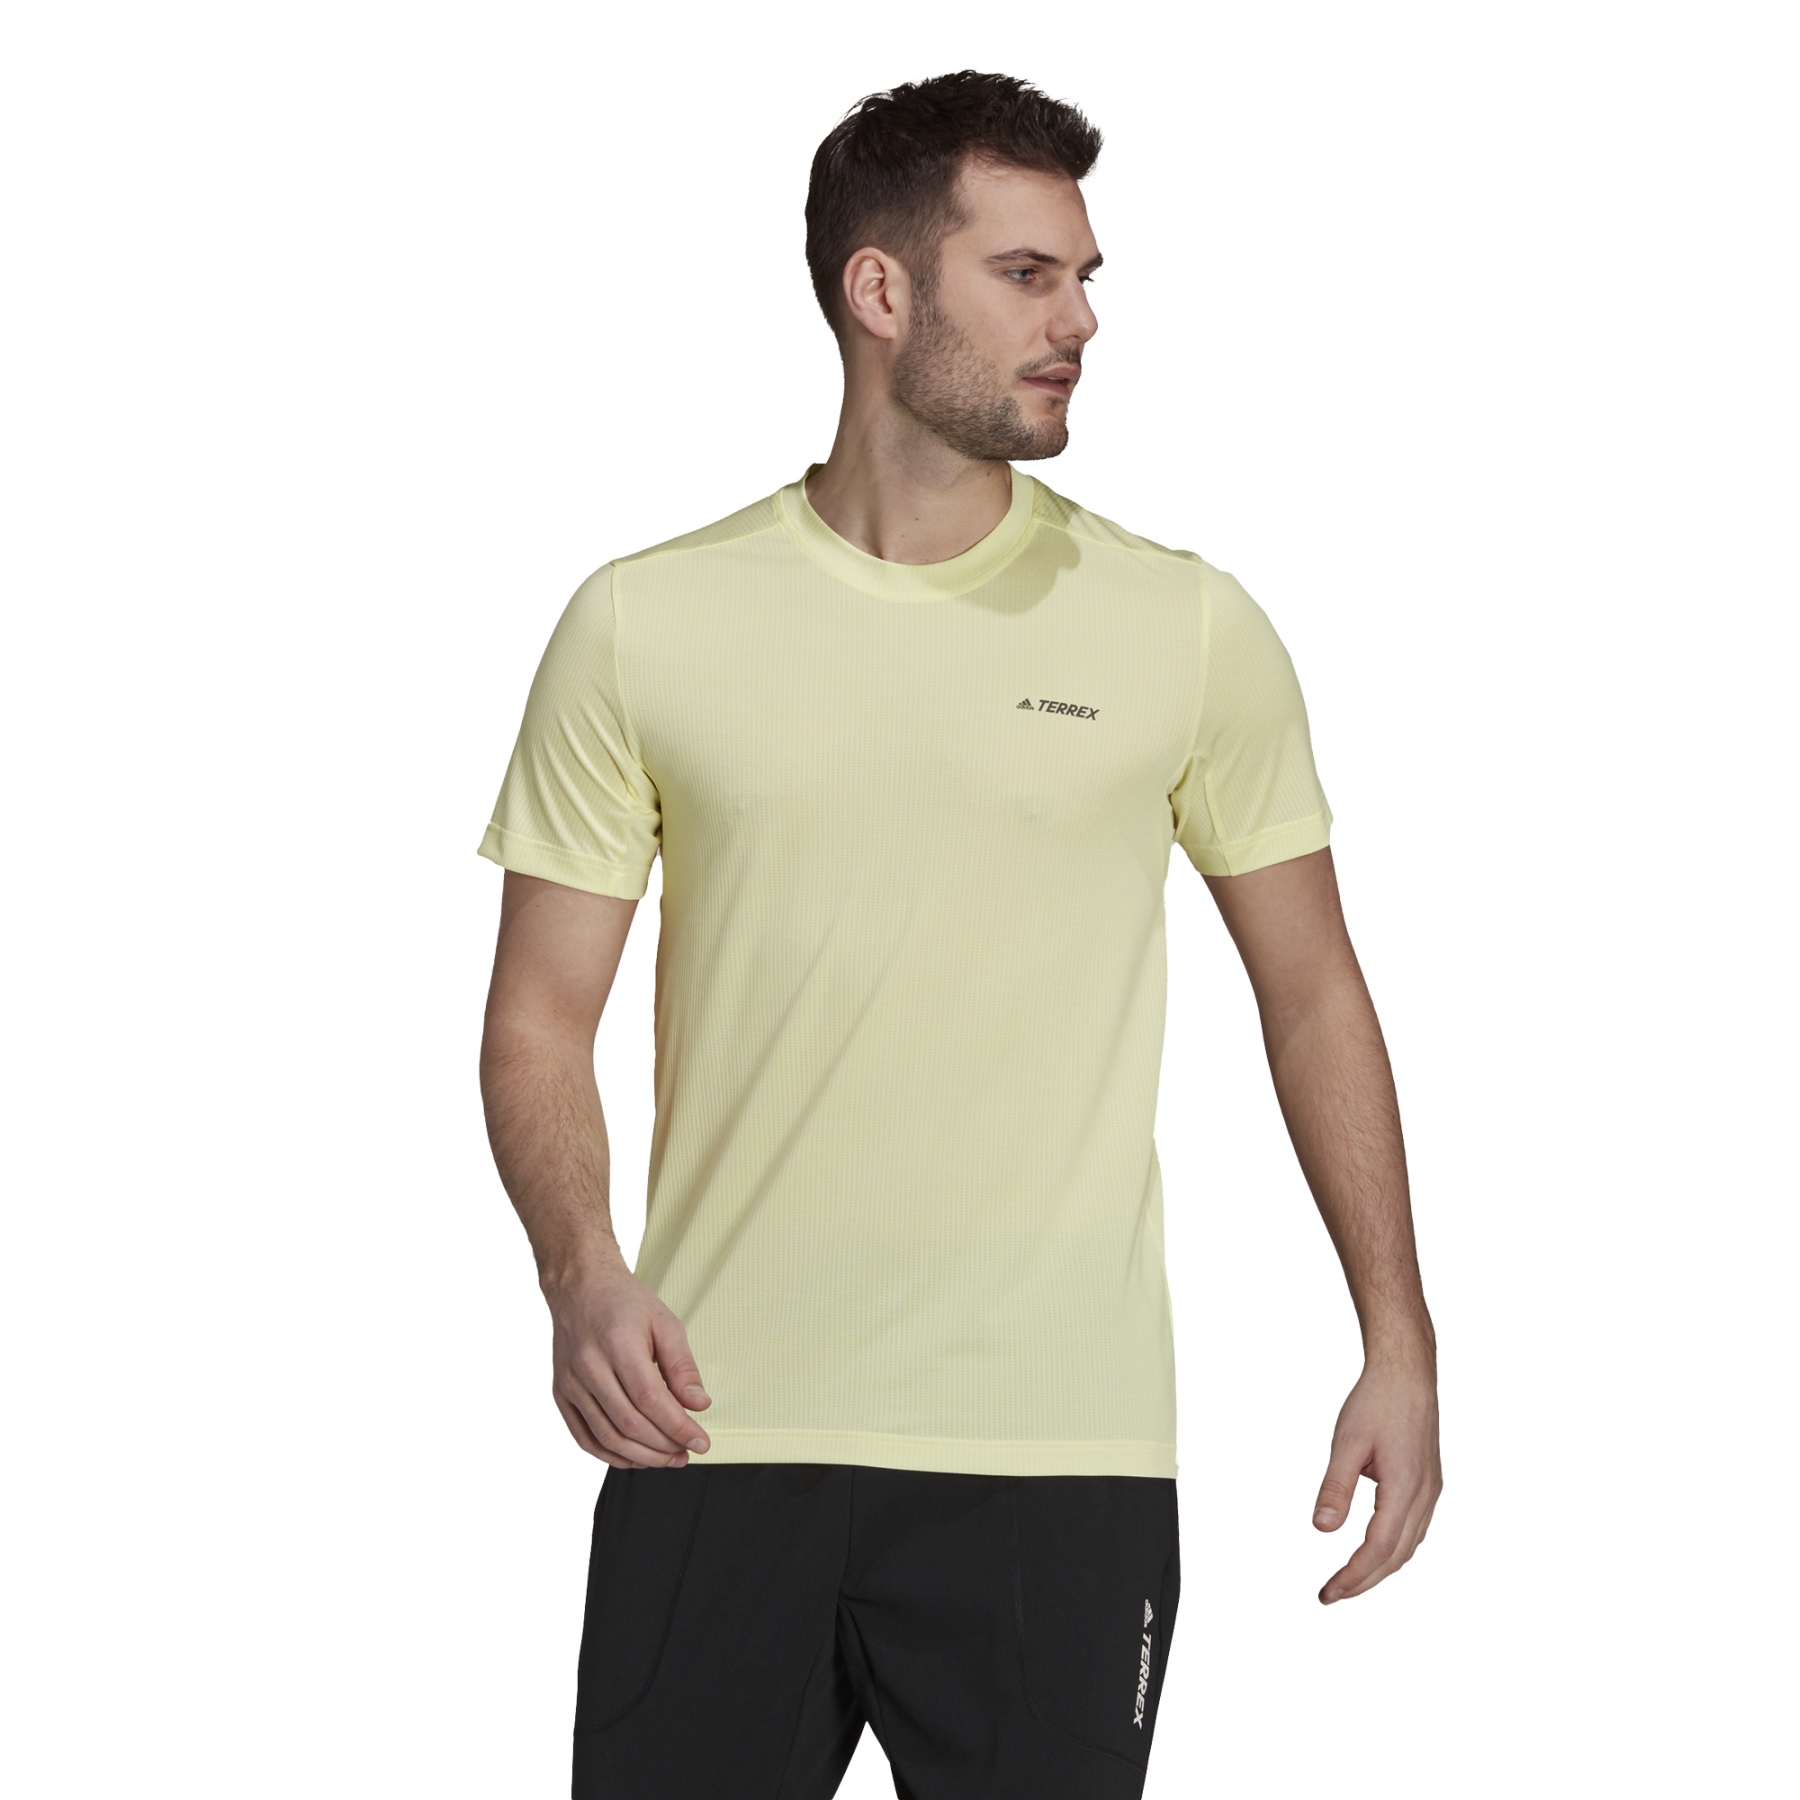 Produktbild von adidas TERREX Tivid T-Shirt Herren - pulse yellow GQ4263